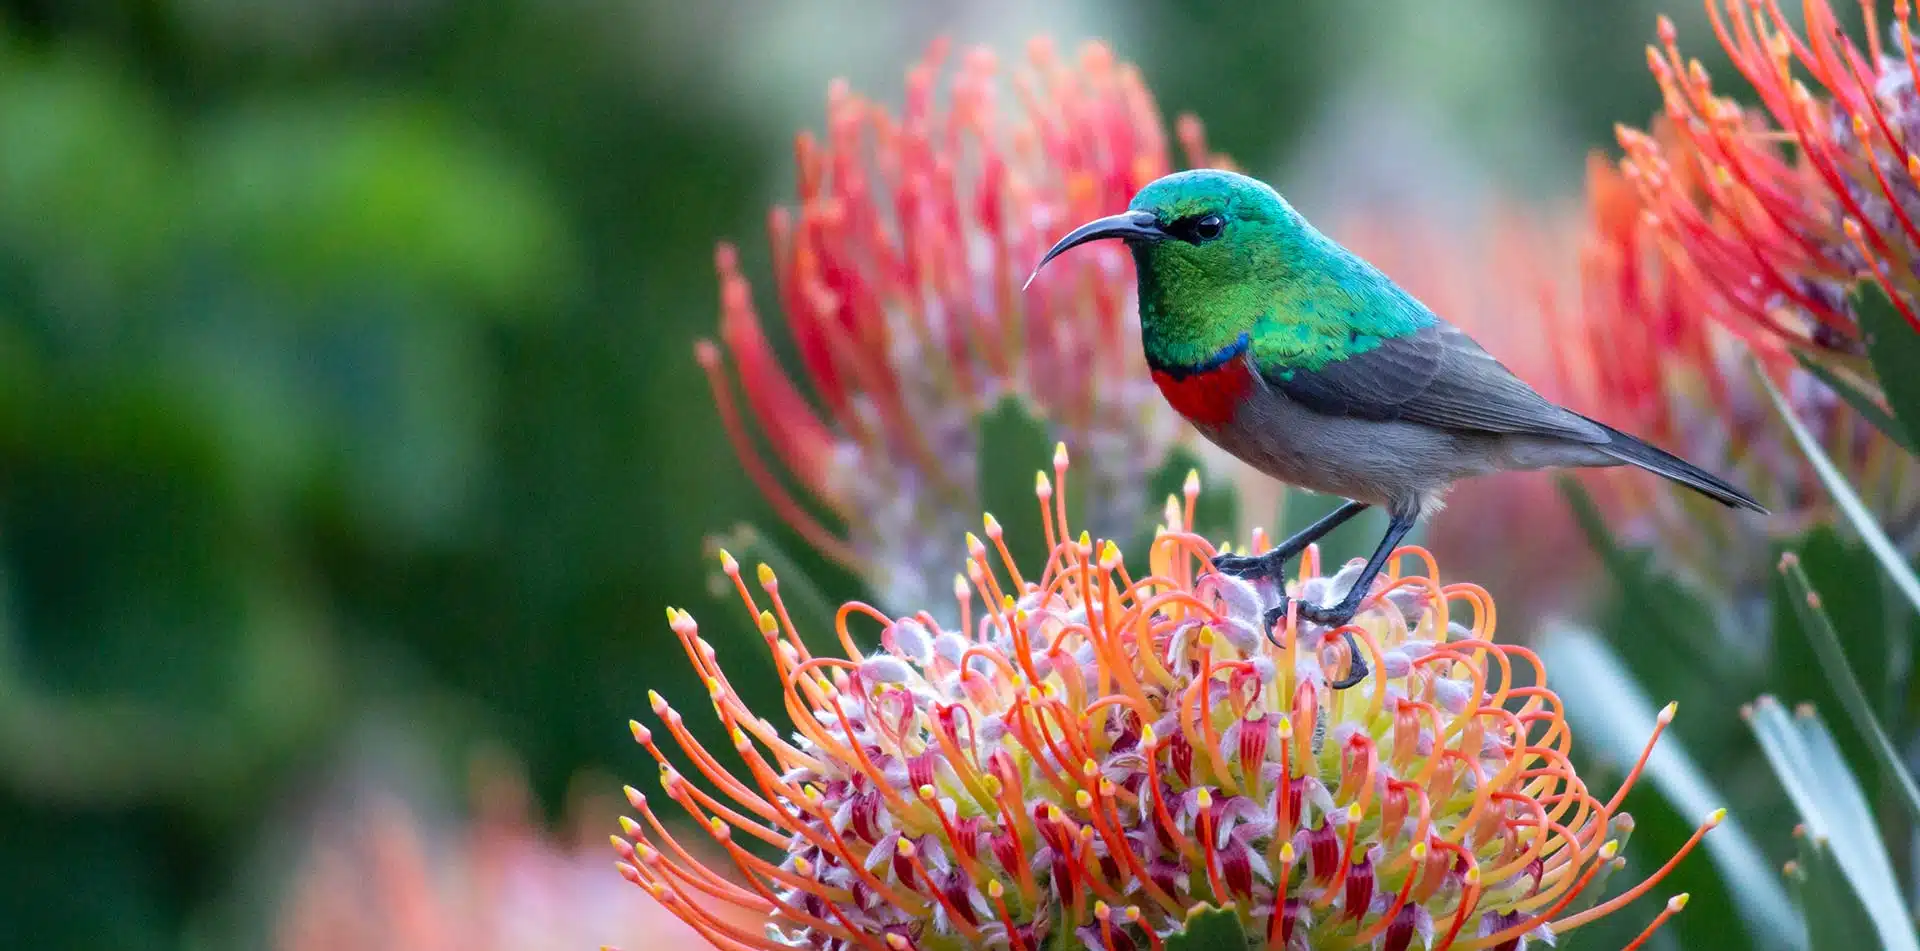 Petite Sunbird, South Africa